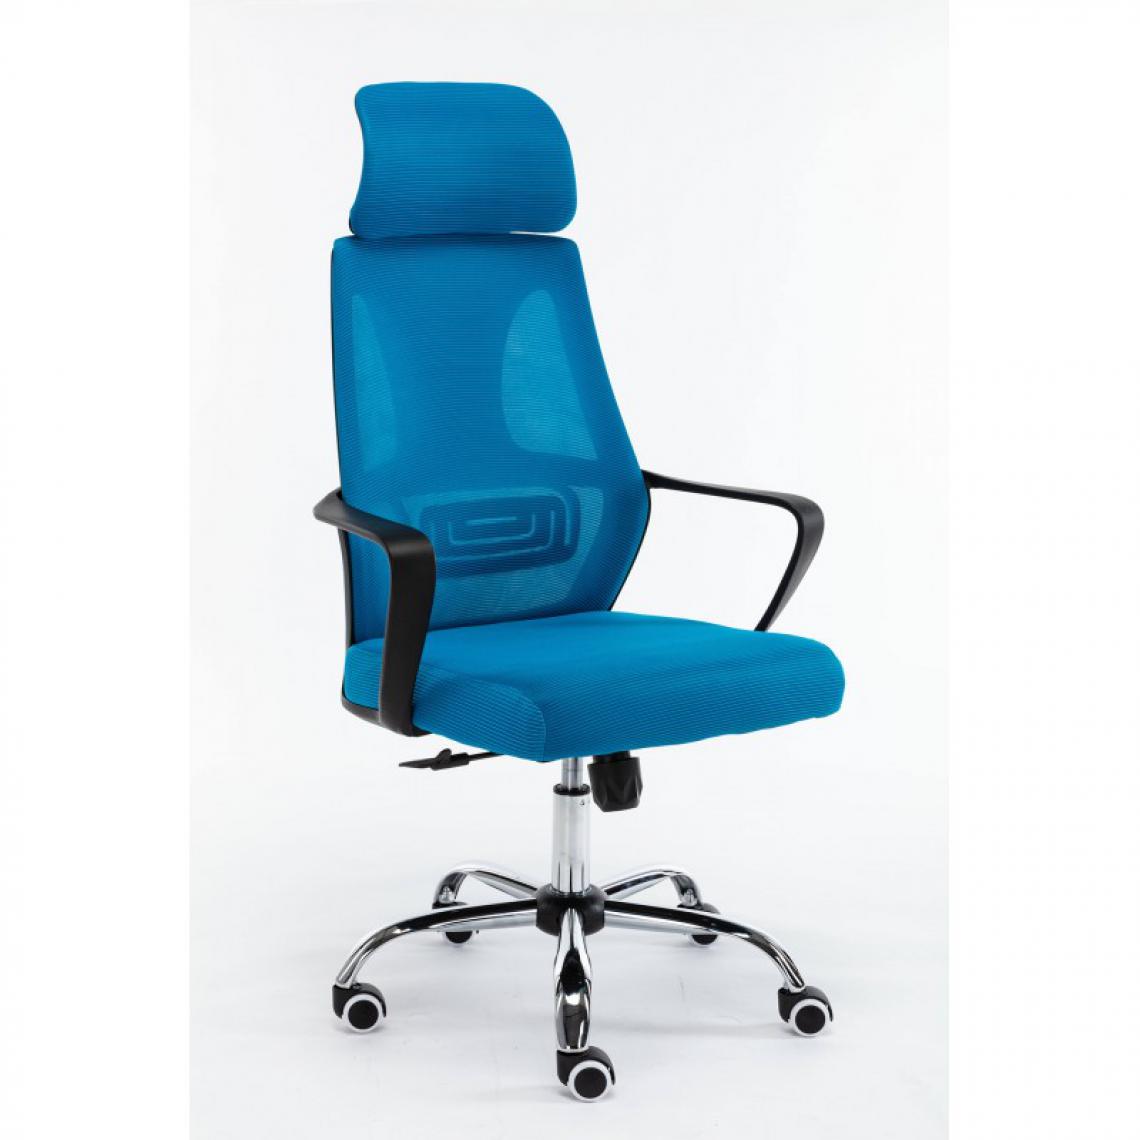 Hucoco - ELIASS - Fauteuil de bureau ergonomique - Hauteur ajustable - Avec accoudoirs - Chaise de bureau télétravail - Bleu - Chaises